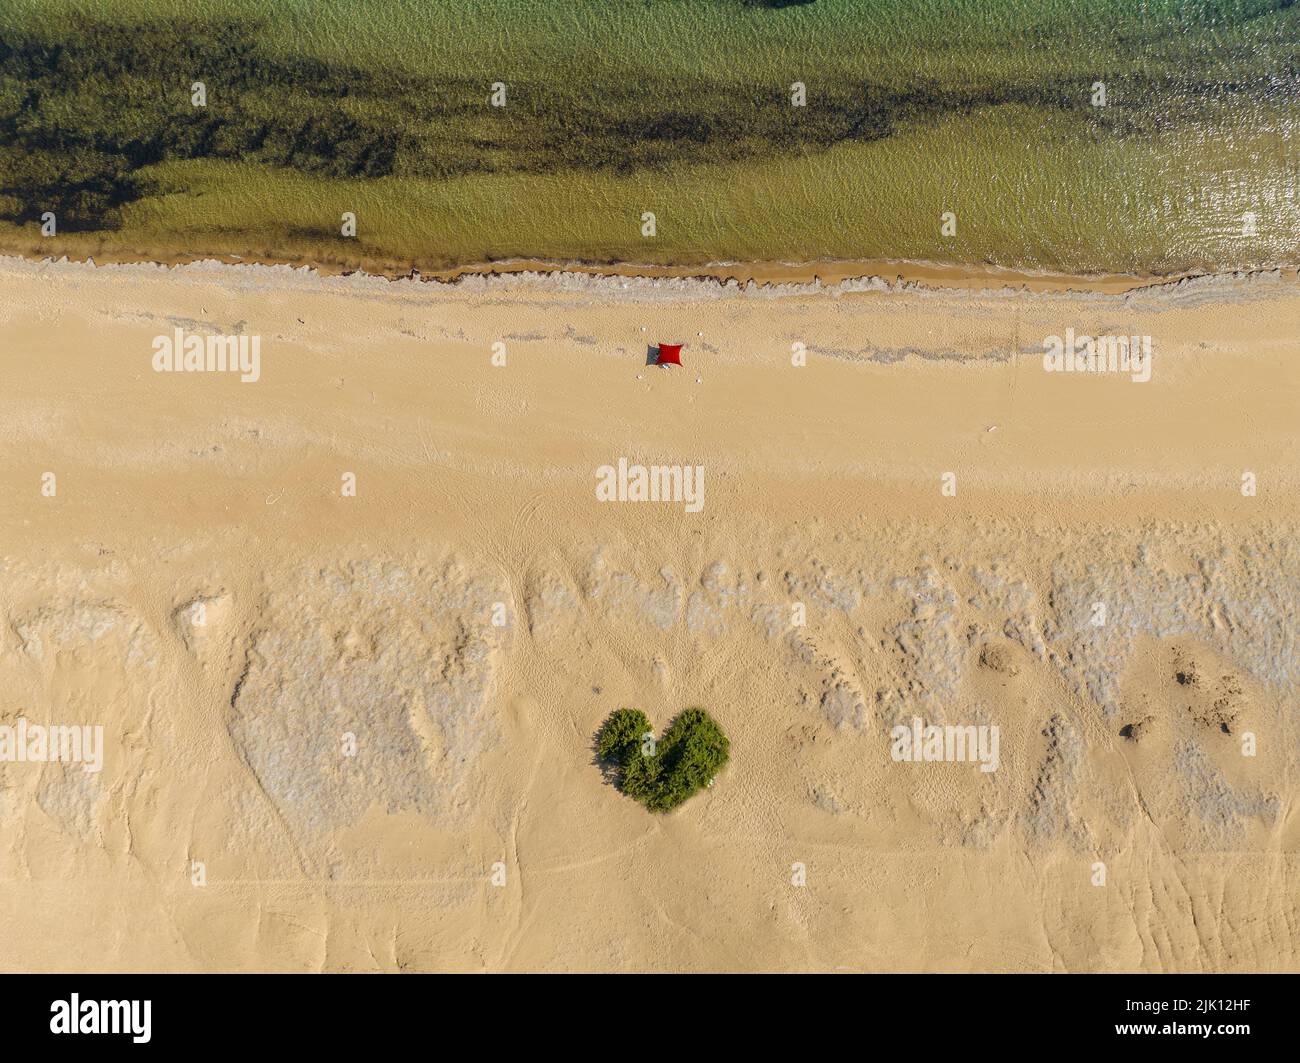 Veduta aerea della spiaggia di Paralia Issos a Corfù, Grecia. Tenda. Tenda da spiaggia. Bagnanti. Bush a forma di cuore in mezzo alla sabbia. Ama la spiaggia. Foto Stock